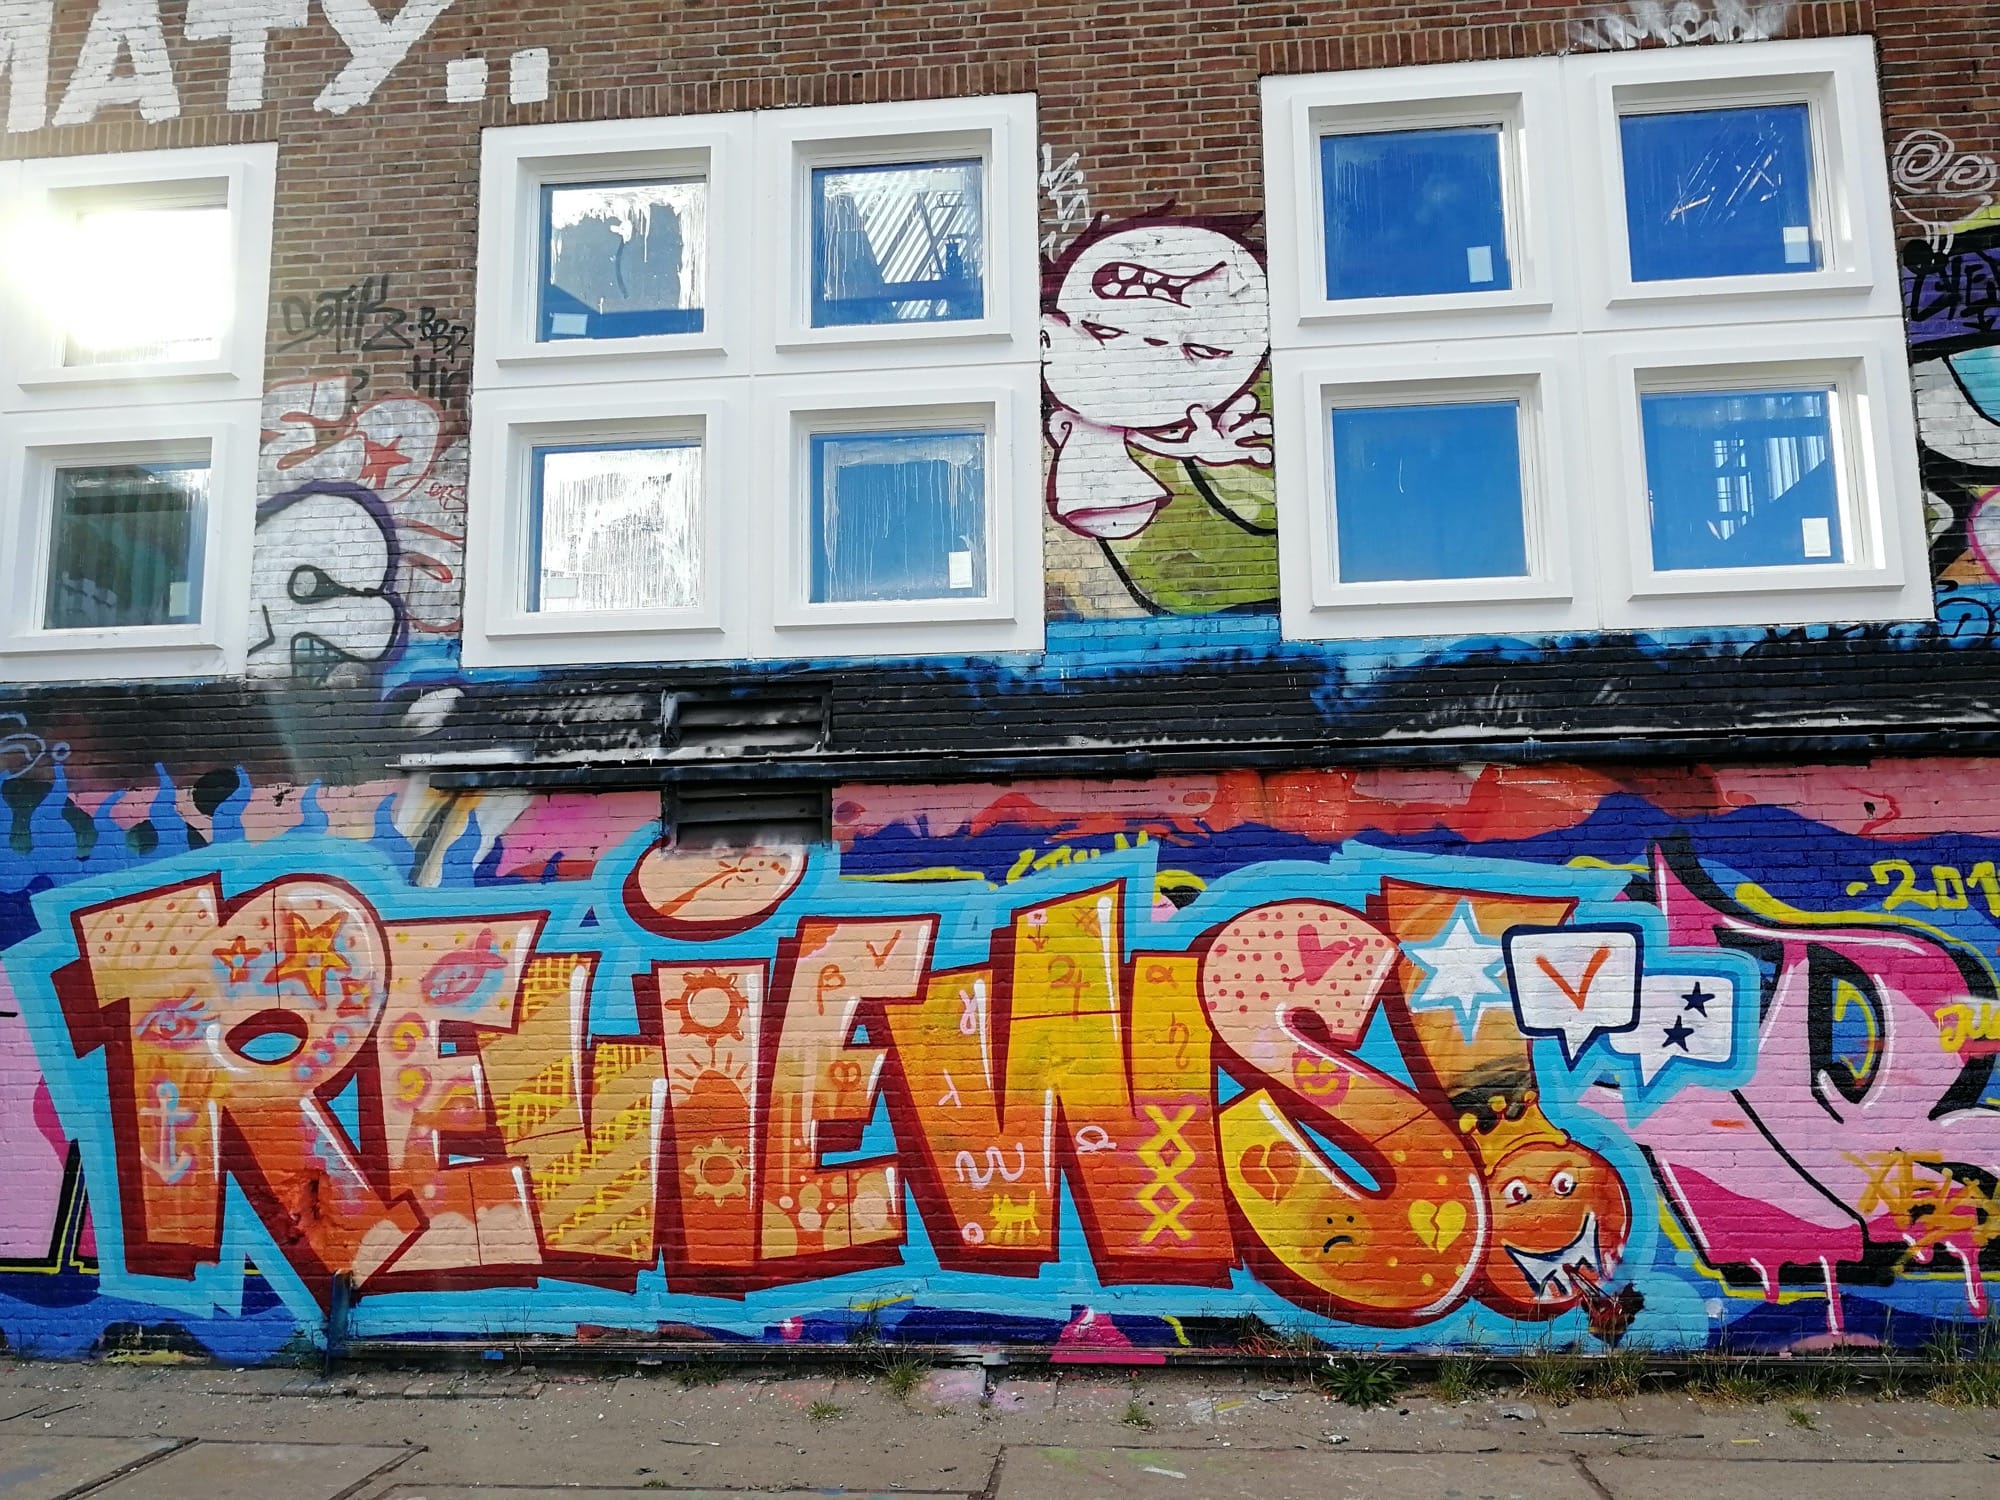 Graffiti 1726 Reviews! capturé par Rabot à Amsterdam Netherlands